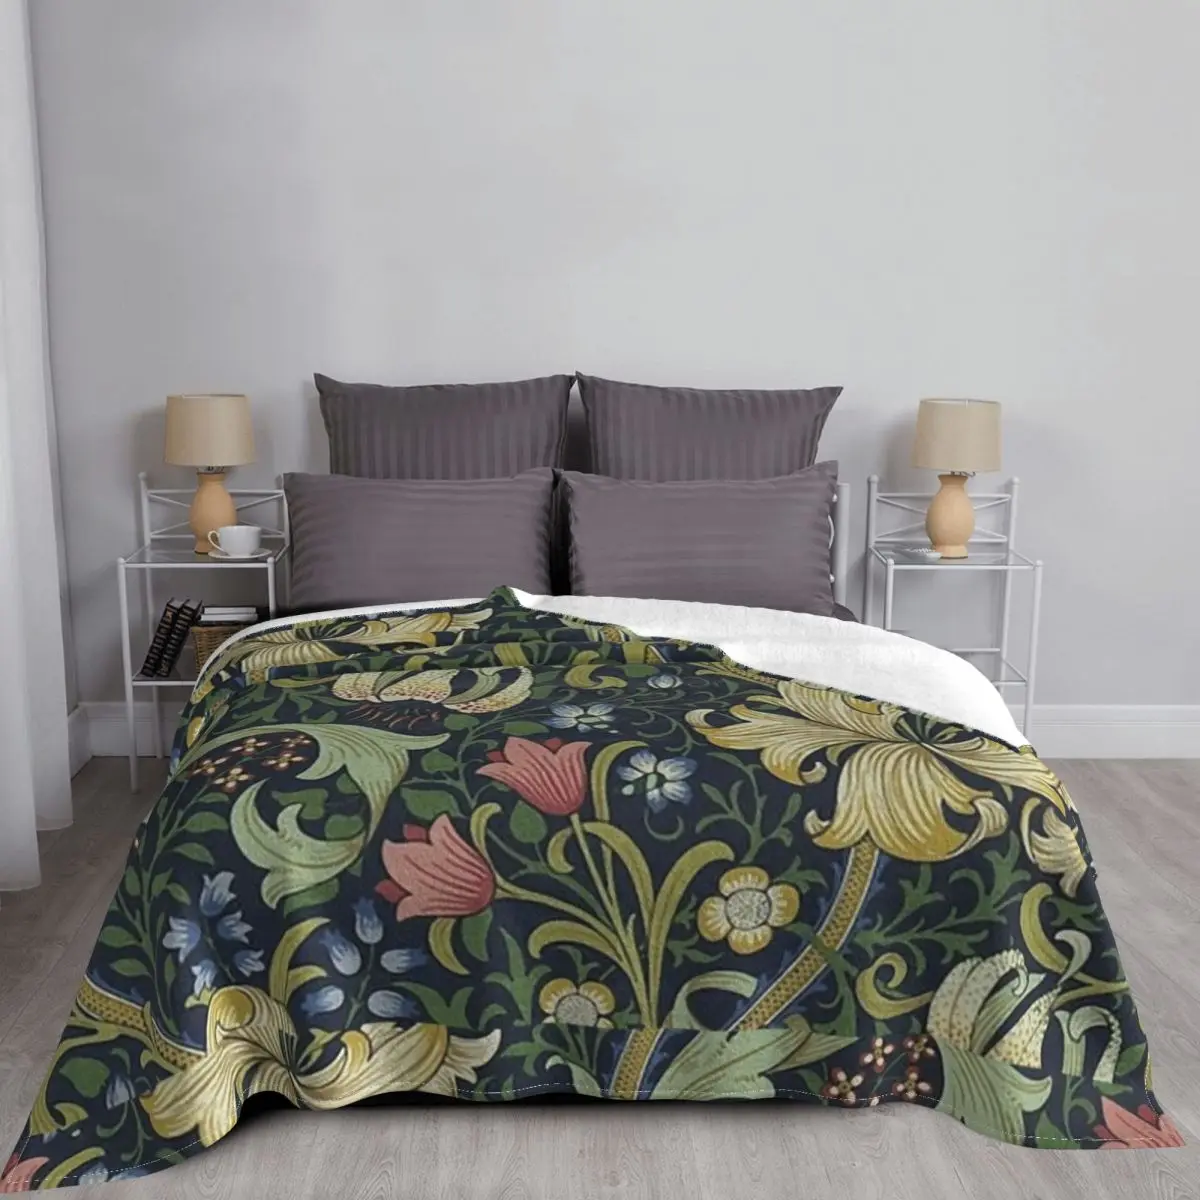 William Morris Jogue Cobertor para Sofá, Padrão de Lírio Dourado, Cobertores Multifuncionais